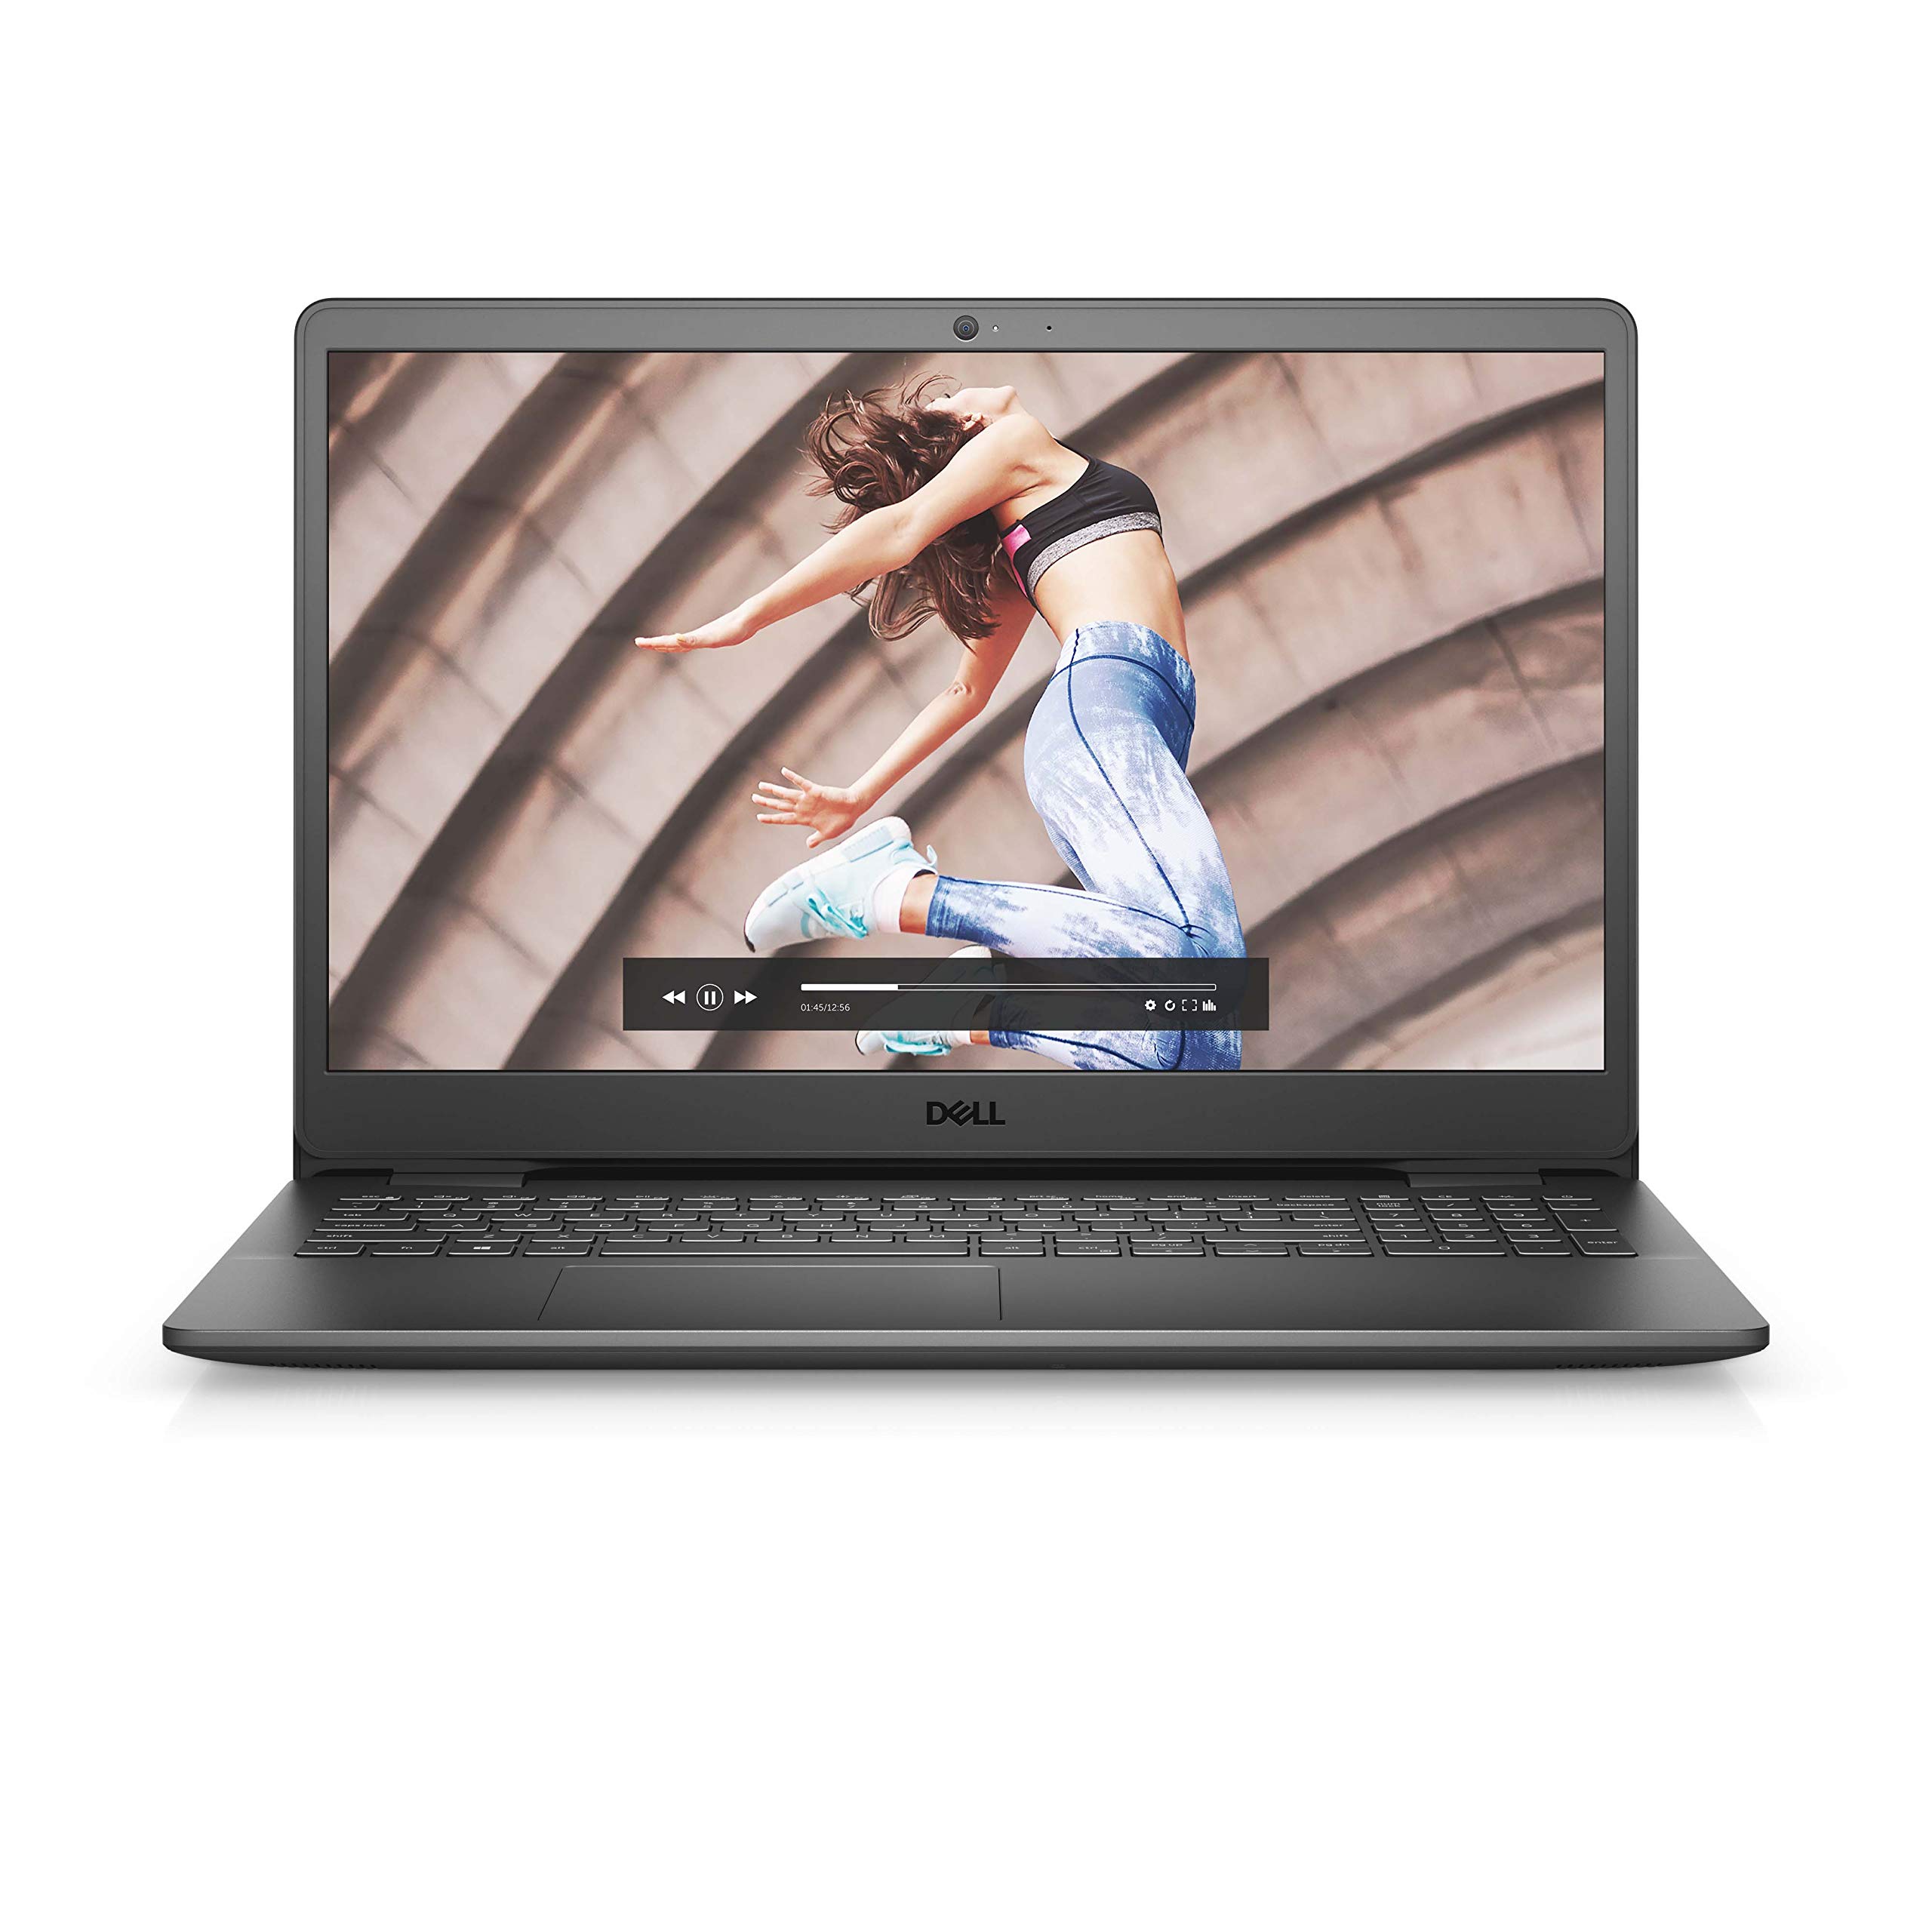 Dell Inspiron 15 (3501) Laptop | 15,6“ Full-HD Display | Intel Core i7-1165G7 | 8 GB RAM | 512 GB SSD | NVIDIA GeForce MX330 | Windows 10 Home | QWERTZ Tastatur | Schwarz